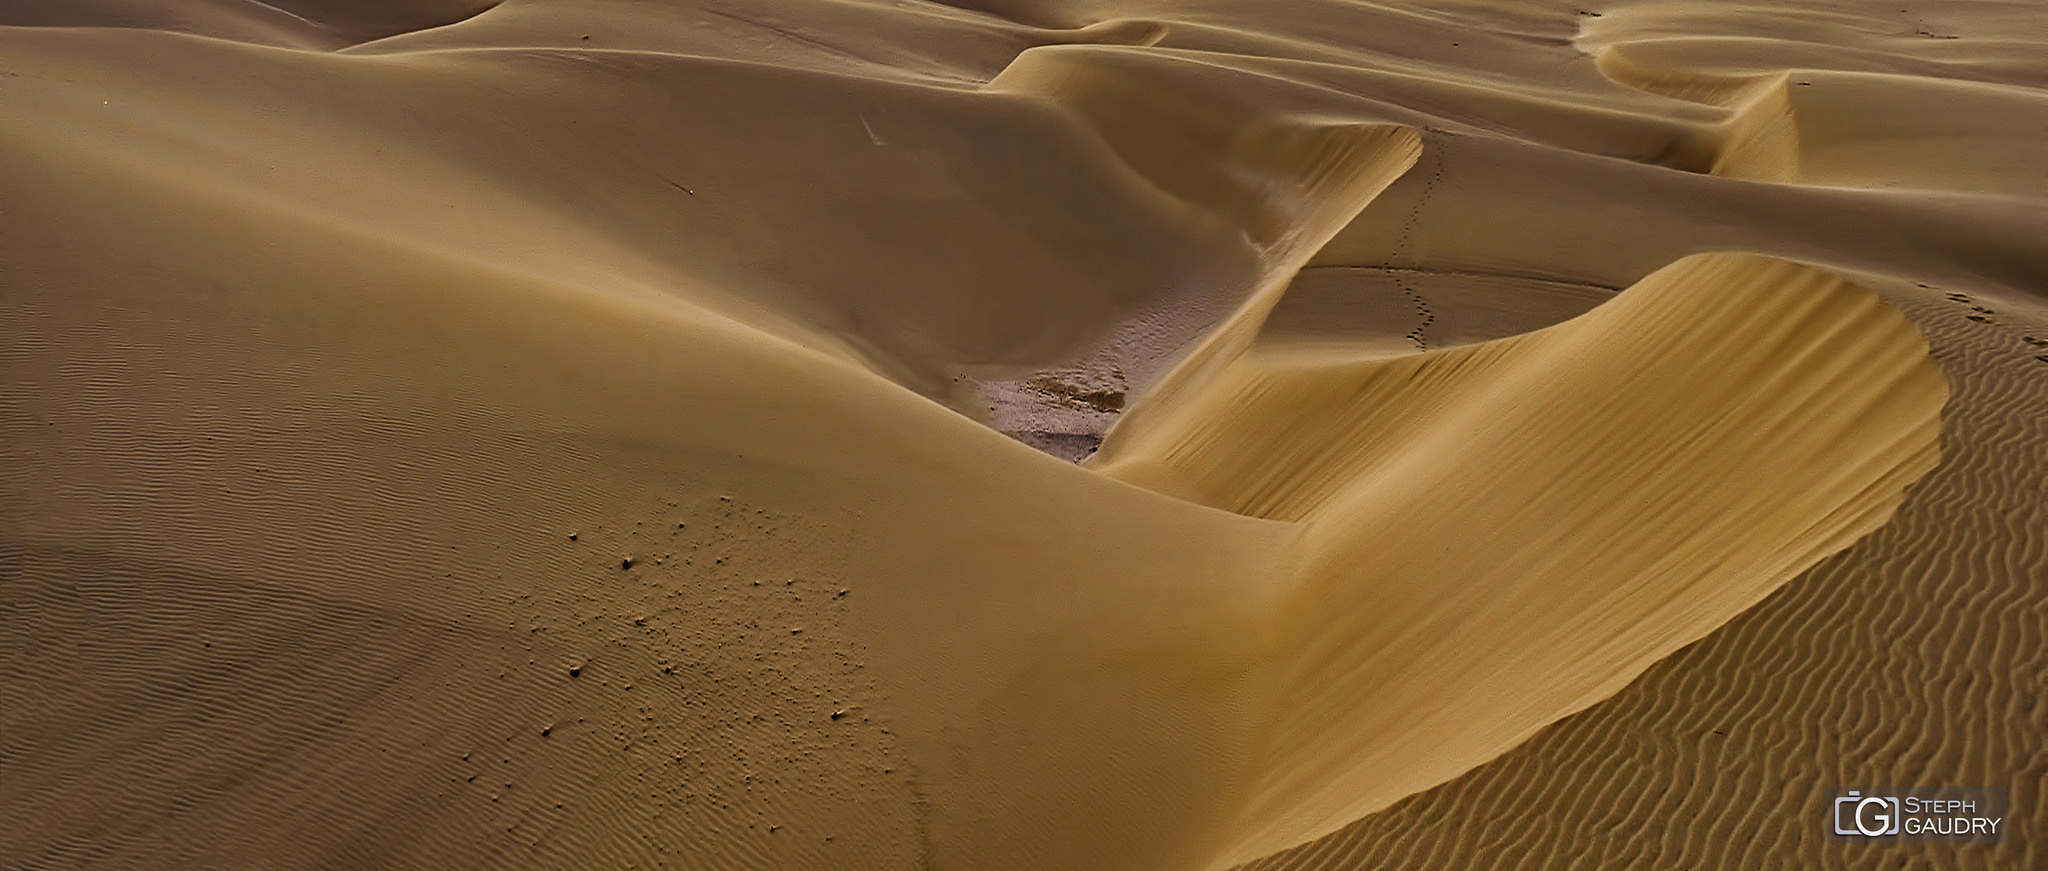 Boa Vista - du sable à perte de vue [Klicken Sie hier, um die Diashow zu starten]